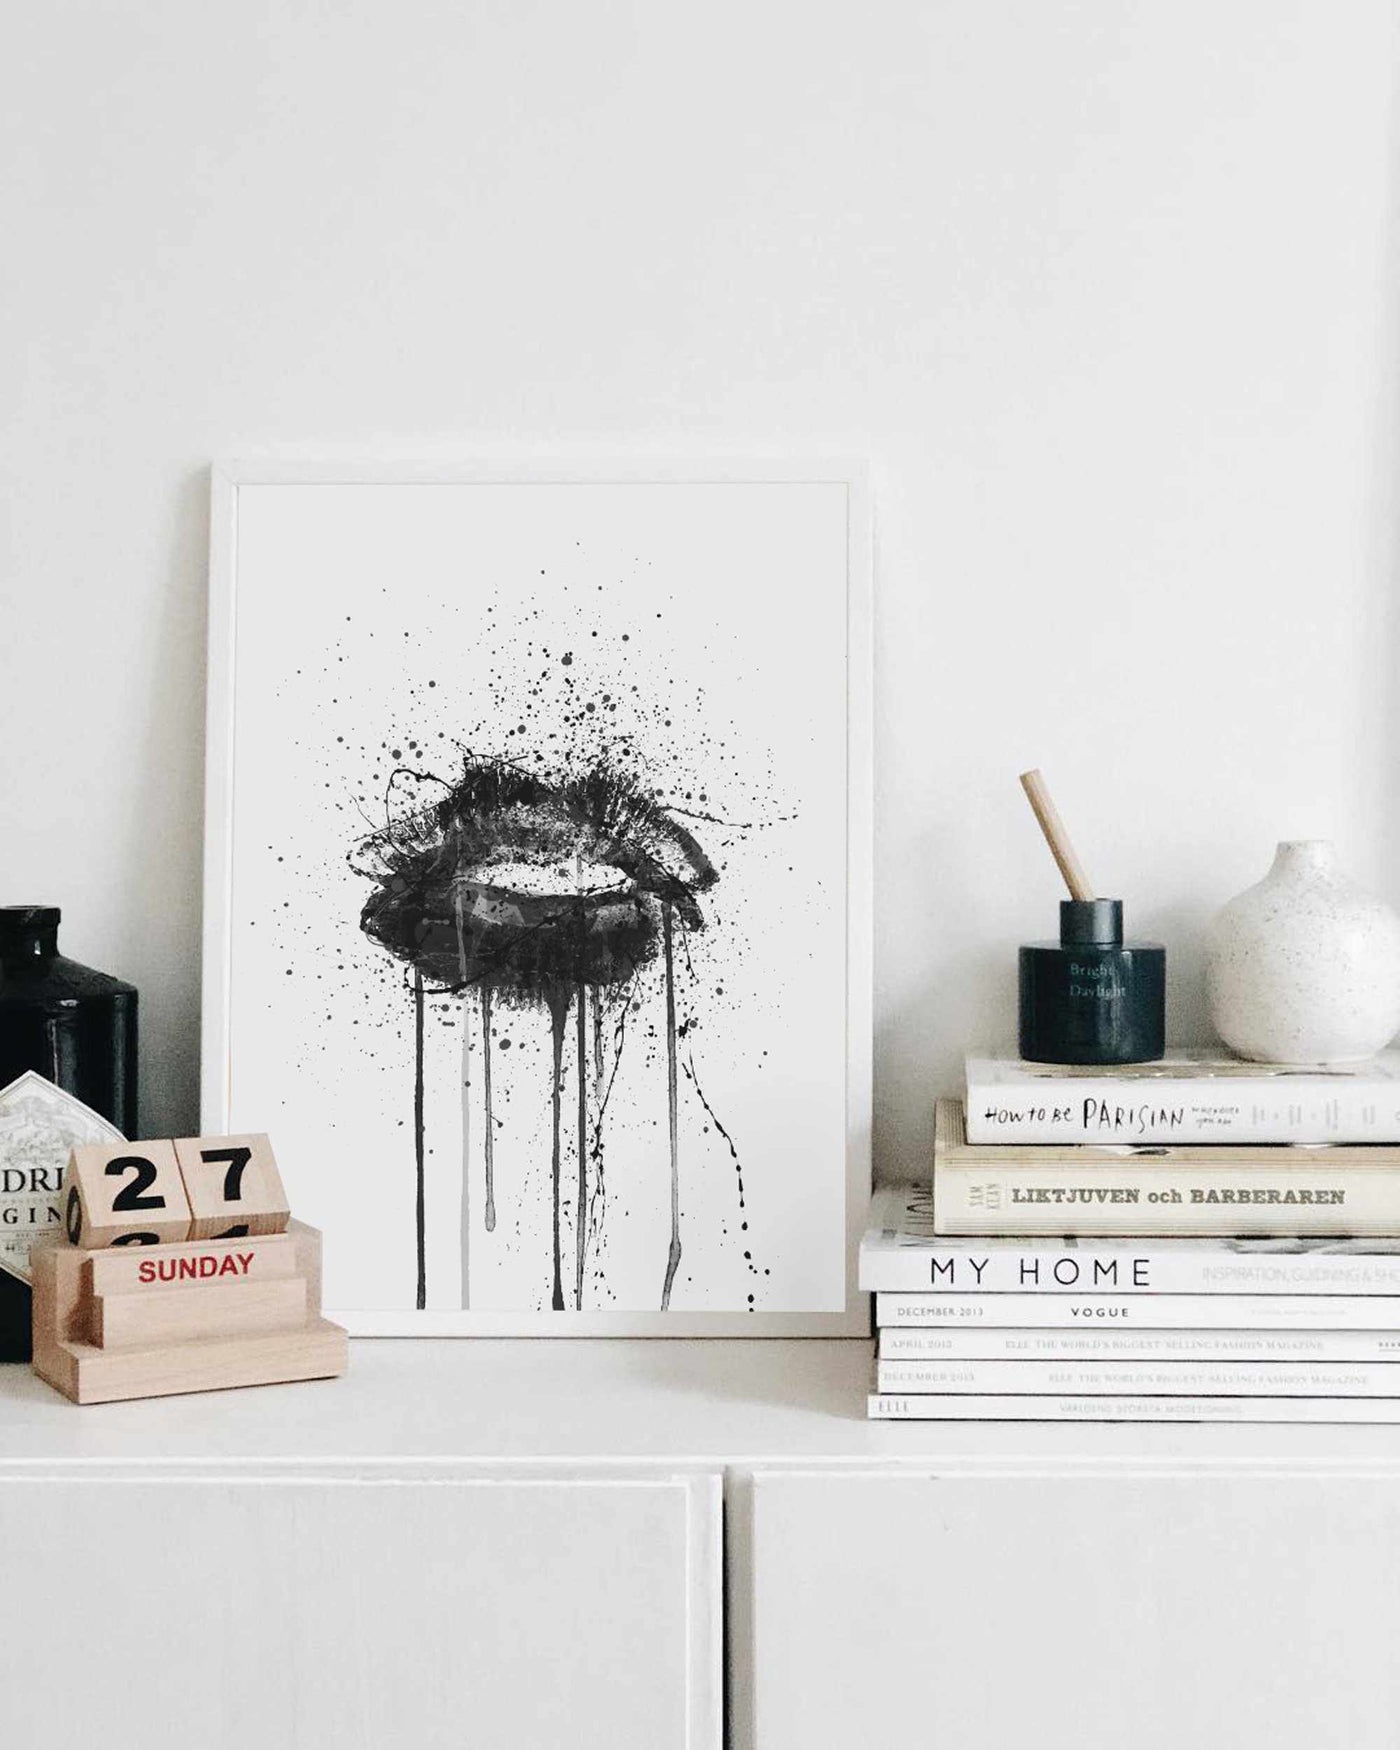 Black Velvet' Lips Wall Art Print